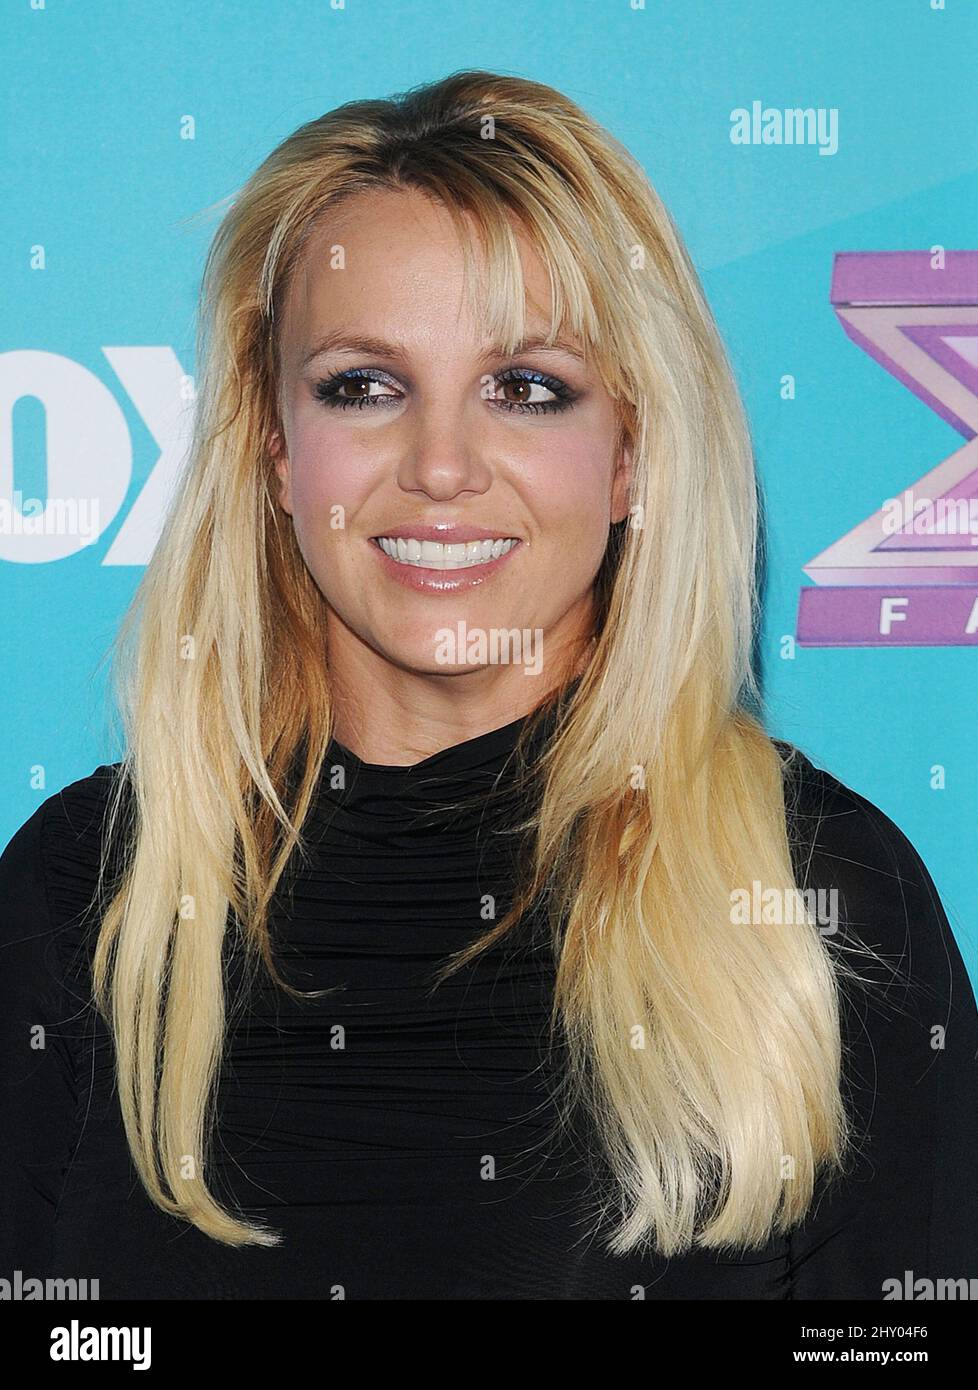 Britney Spears attending 